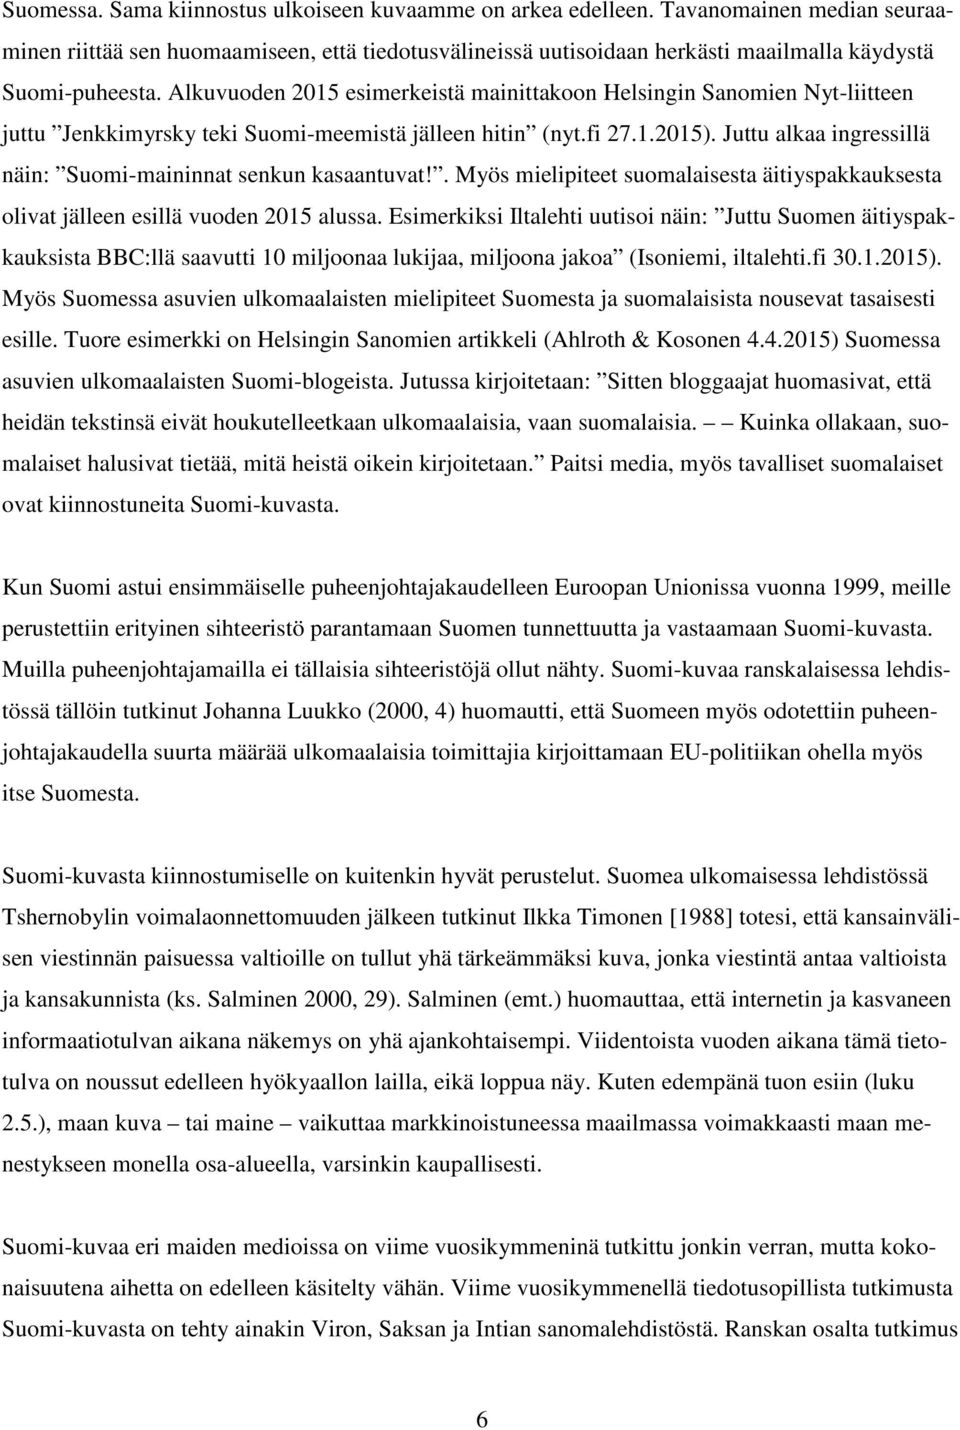 Alkuvuoden 2015 esimerkeistä mainittakoon Helsingin Sanomien Nyt-liitteen juttu Jenkkimyrsky teki Suomi-meemistä jälleen hitin (nyt.fi 27.1.2015).